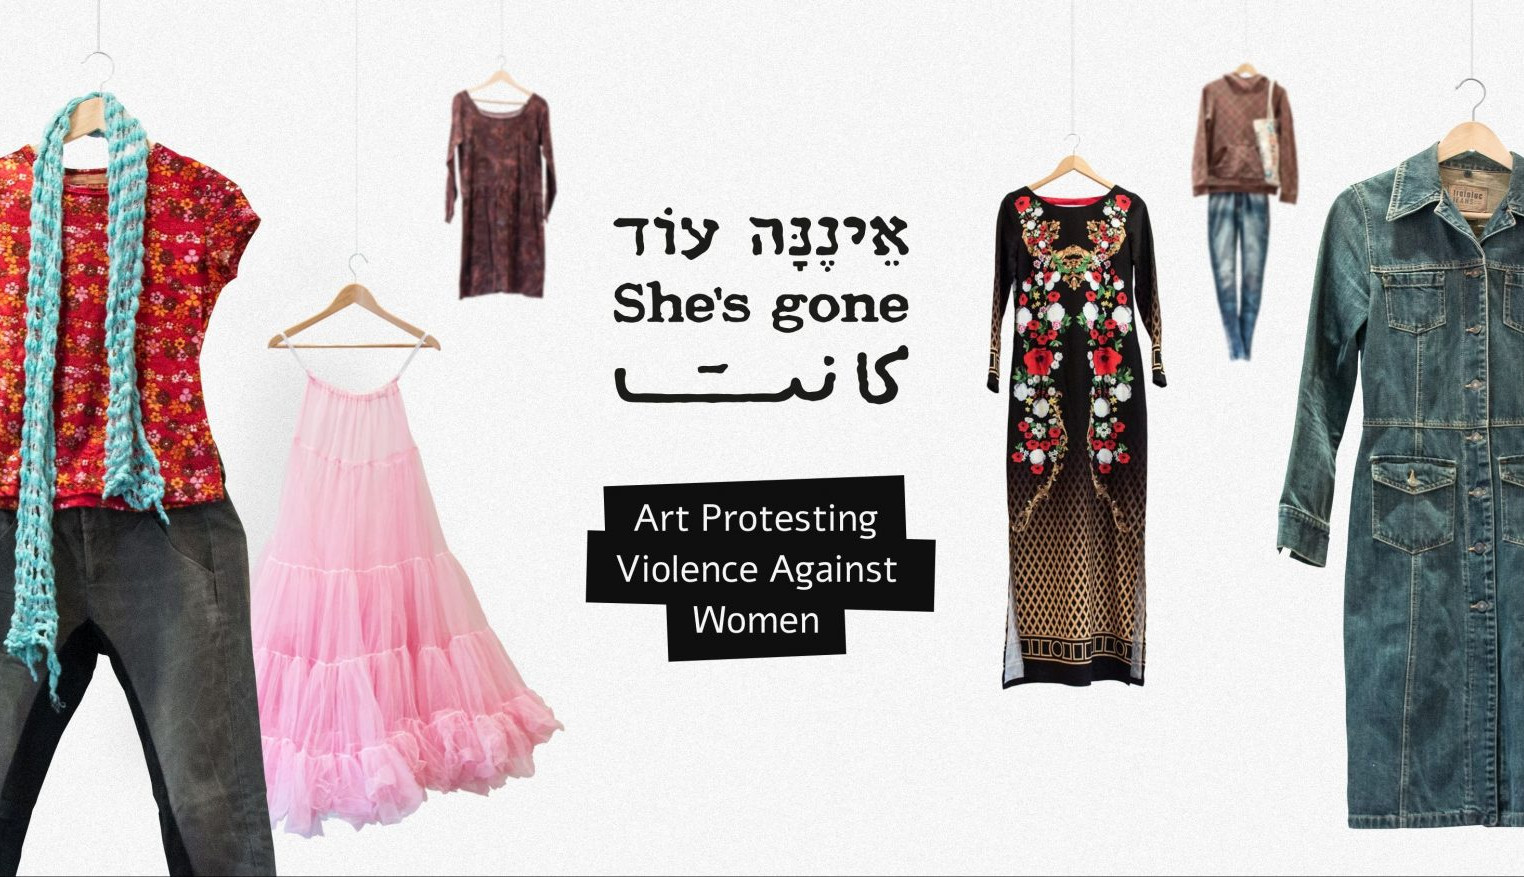 She’s gone - Στην Αθήνα η έκθεση με ρούχα γυναικών που έχουν δολοφονηθεί